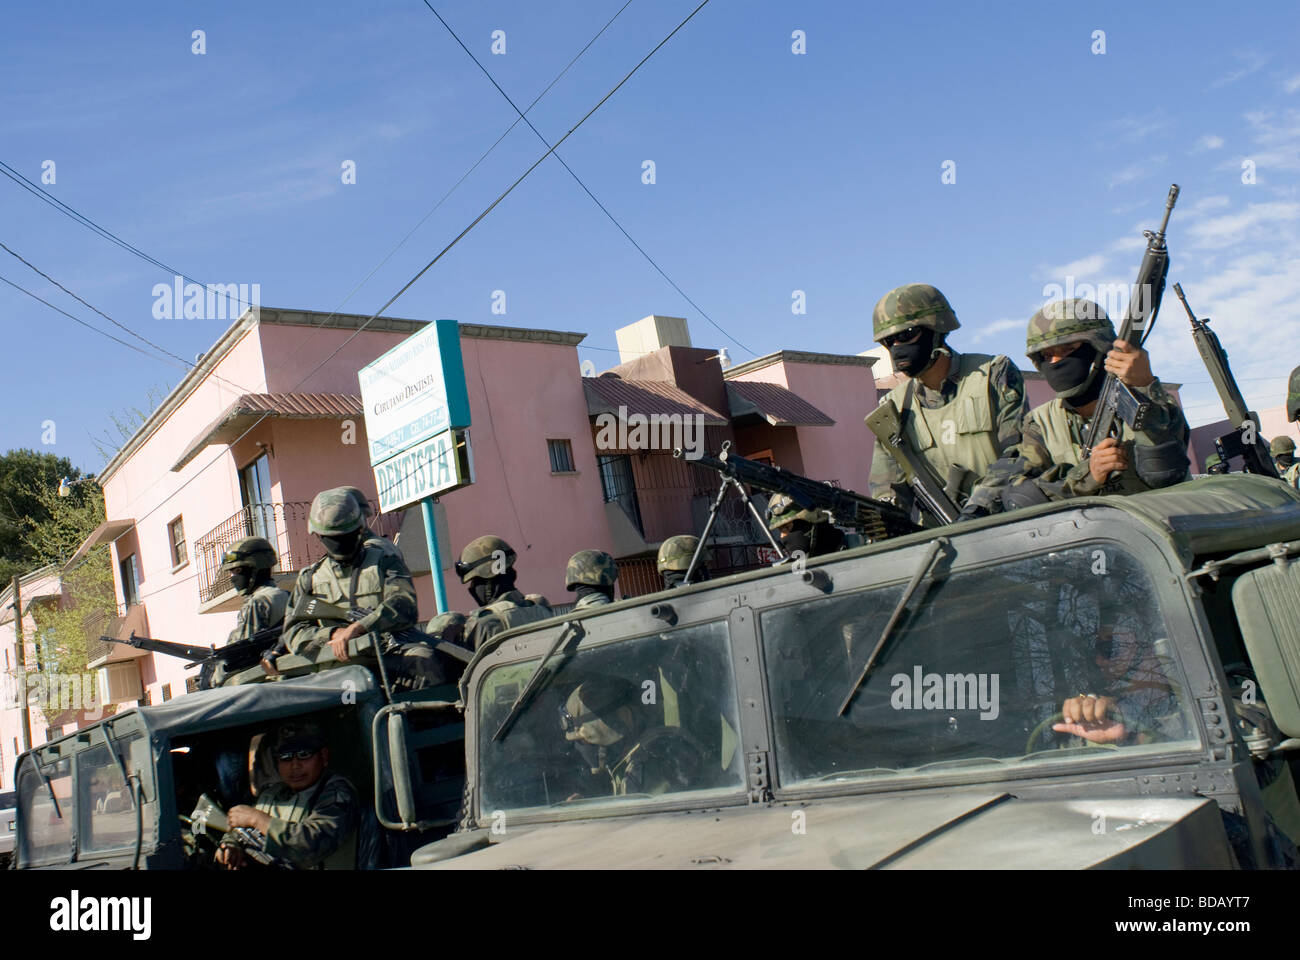 Las tropas federales ocupan posiciones tácticas en las calles de Juárez durante una revisión de un hombre que conducía sin matrícula. Foto de stock